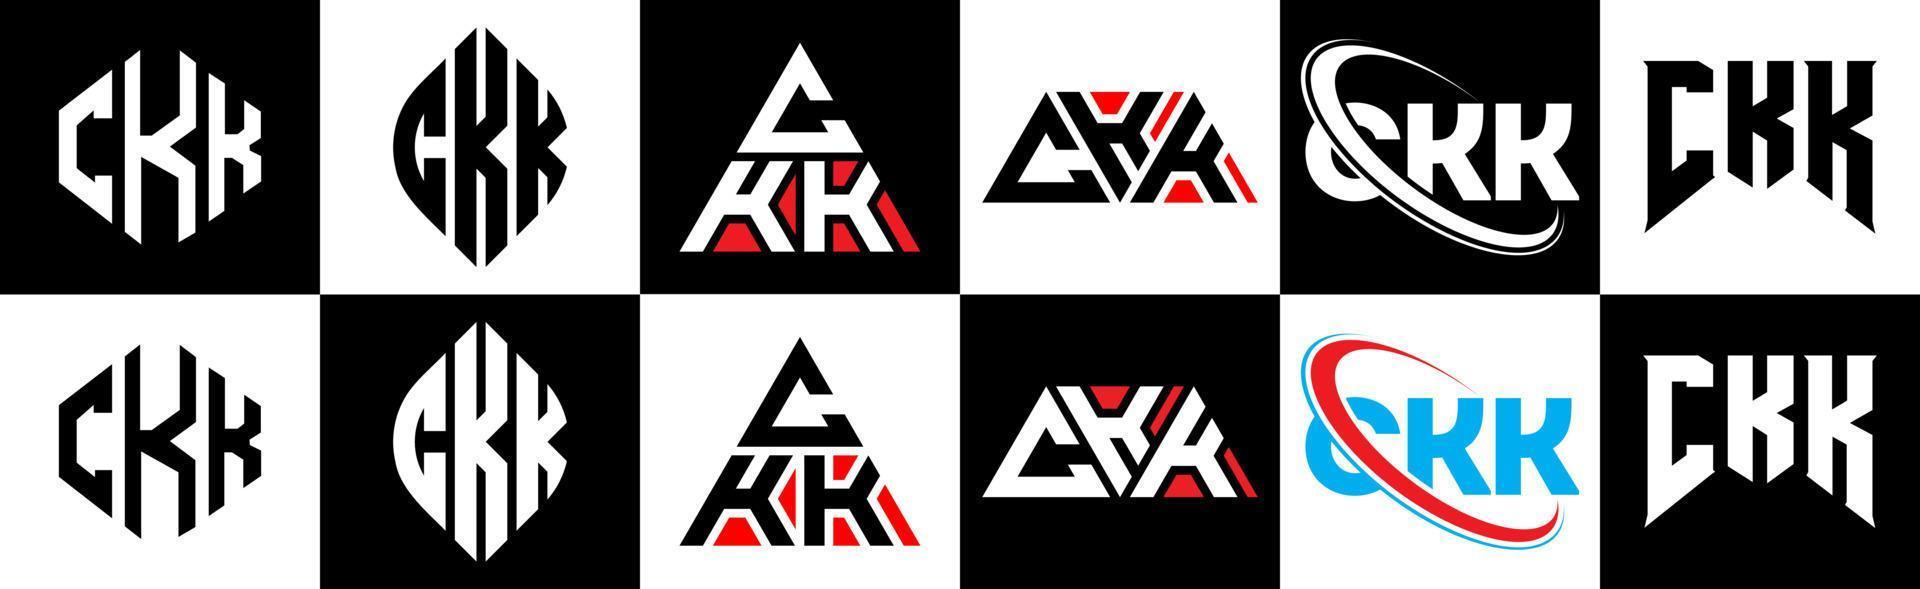 ckk-Buchstaben-Logo-Design in sechs Stilen. ckk Polygon, Kreis, Dreieck, Sechseck, flacher und einfacher Stil mit schwarz-weißem Buchstabenlogo in einer Zeichenfläche. ckk minimalistisches und klassisches Logo vektor